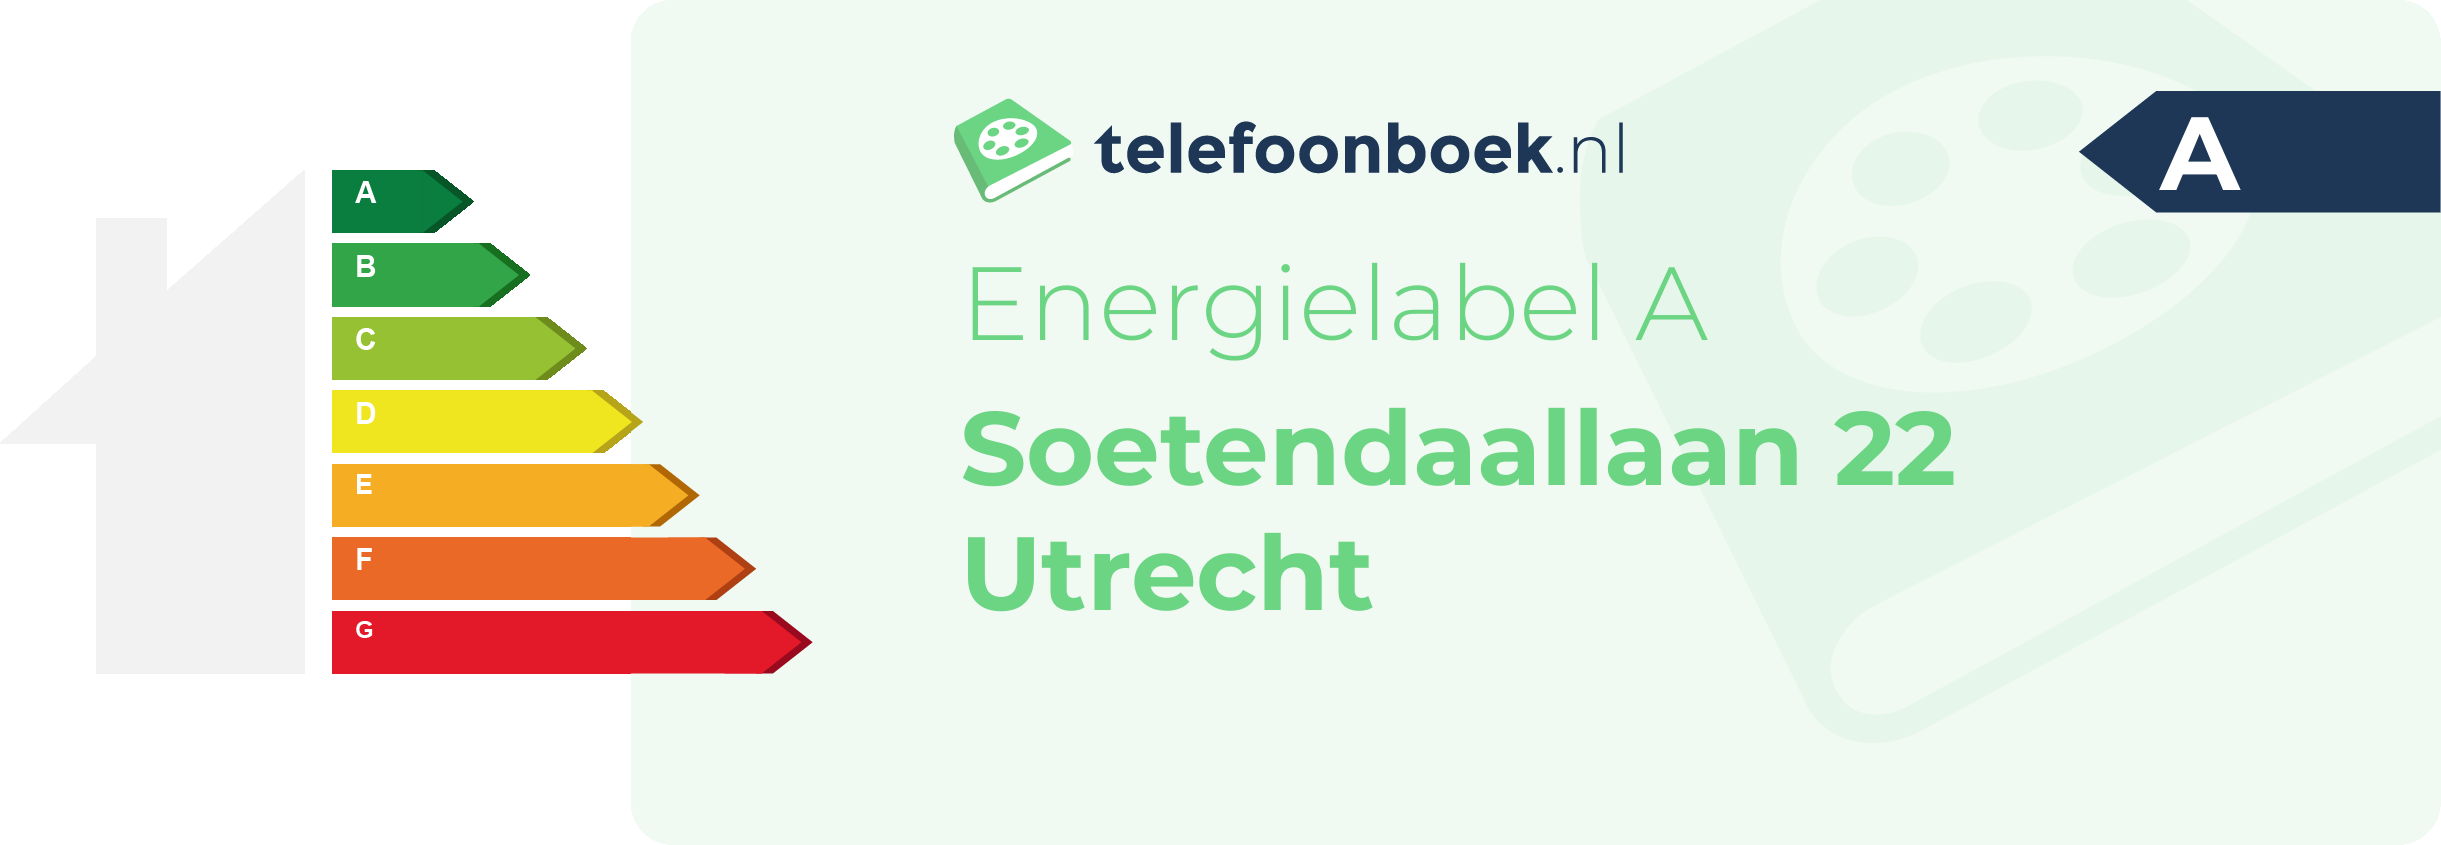 Energielabel Soetendaallaan 22 Utrecht